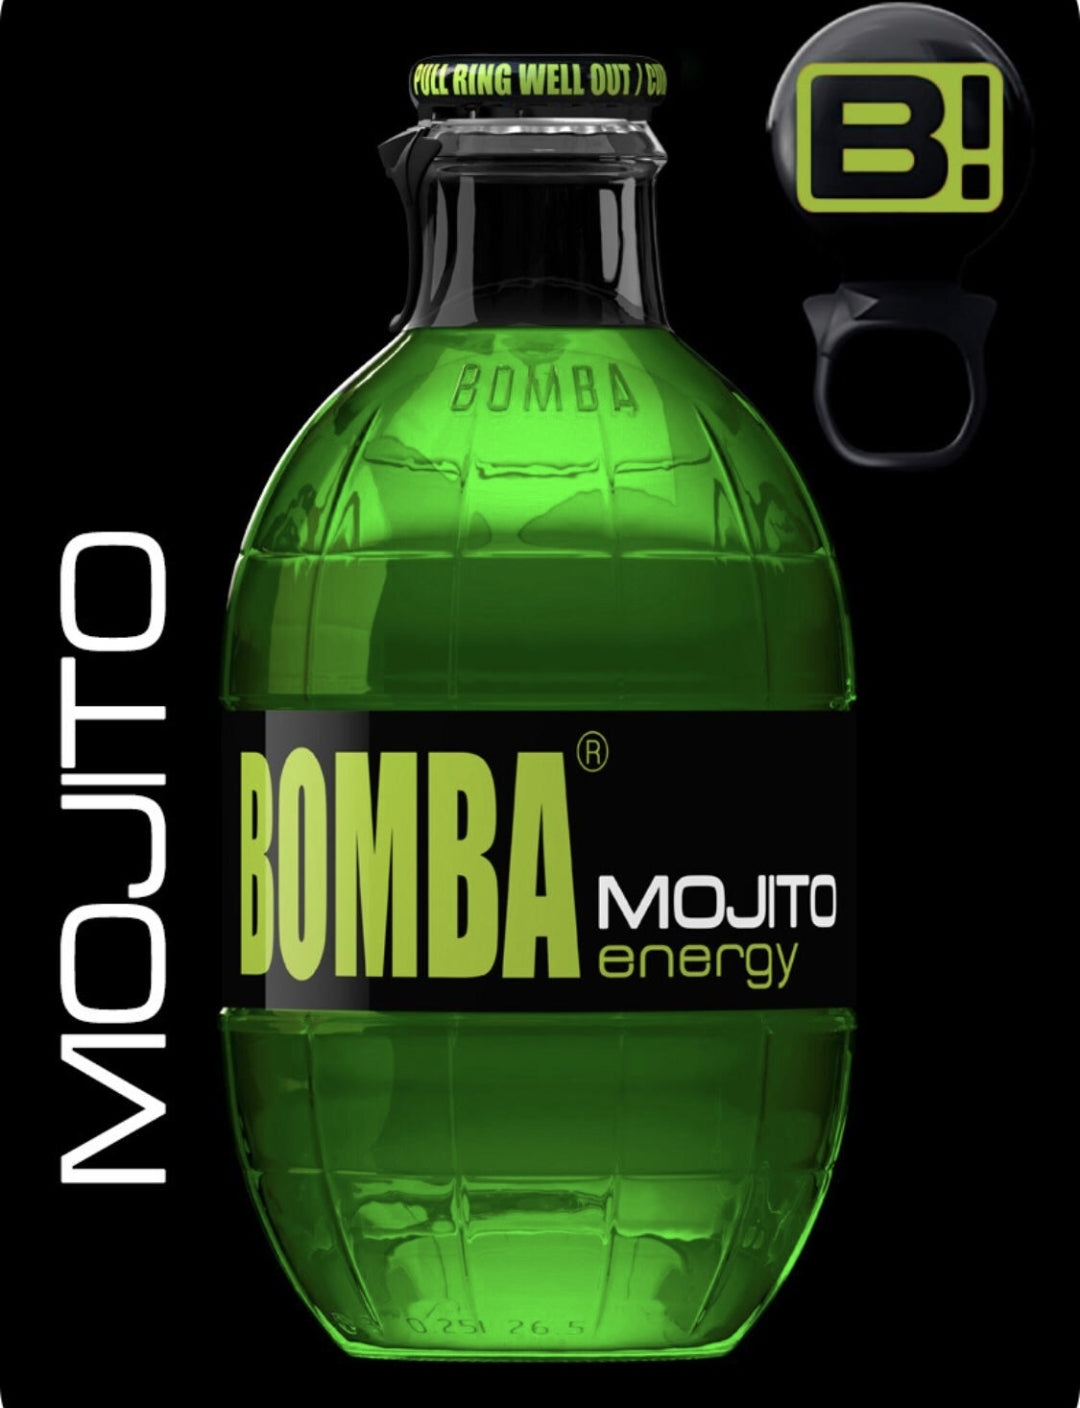 Bomba Mojita Energy drankje